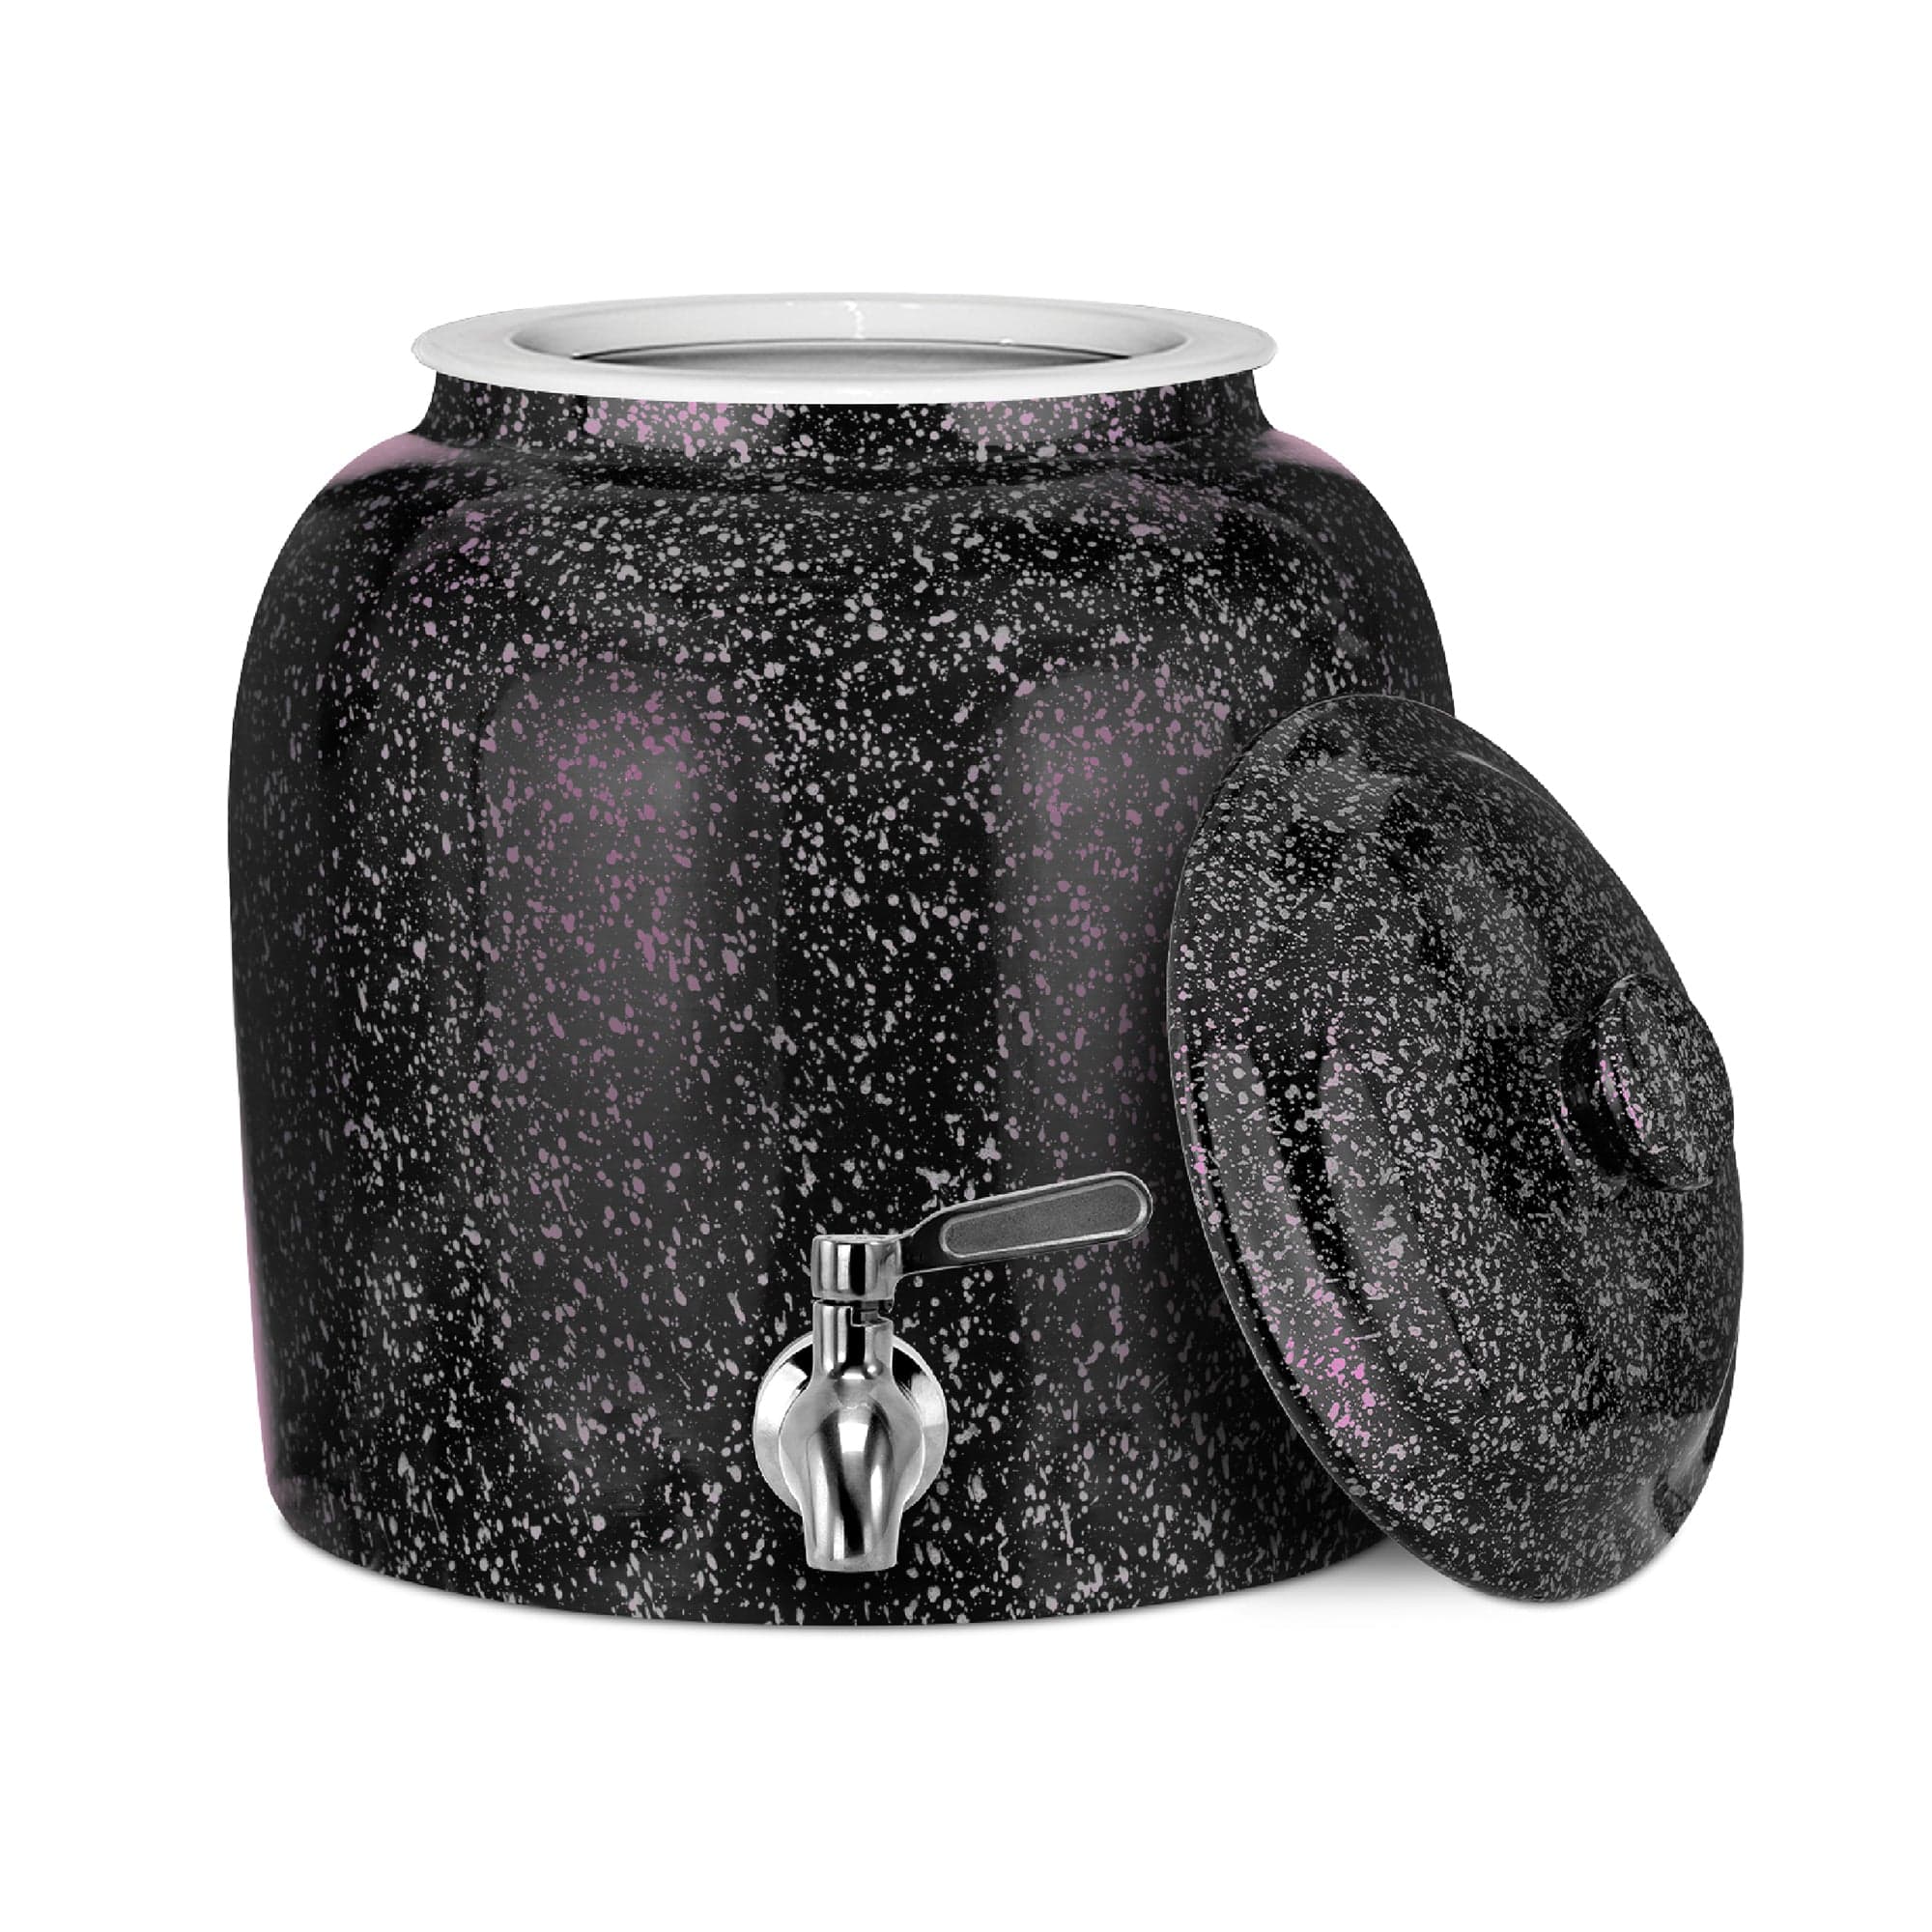 GEO Porcelain Ceramic Crock Water Dispenser - Black w/ Pink Speckles